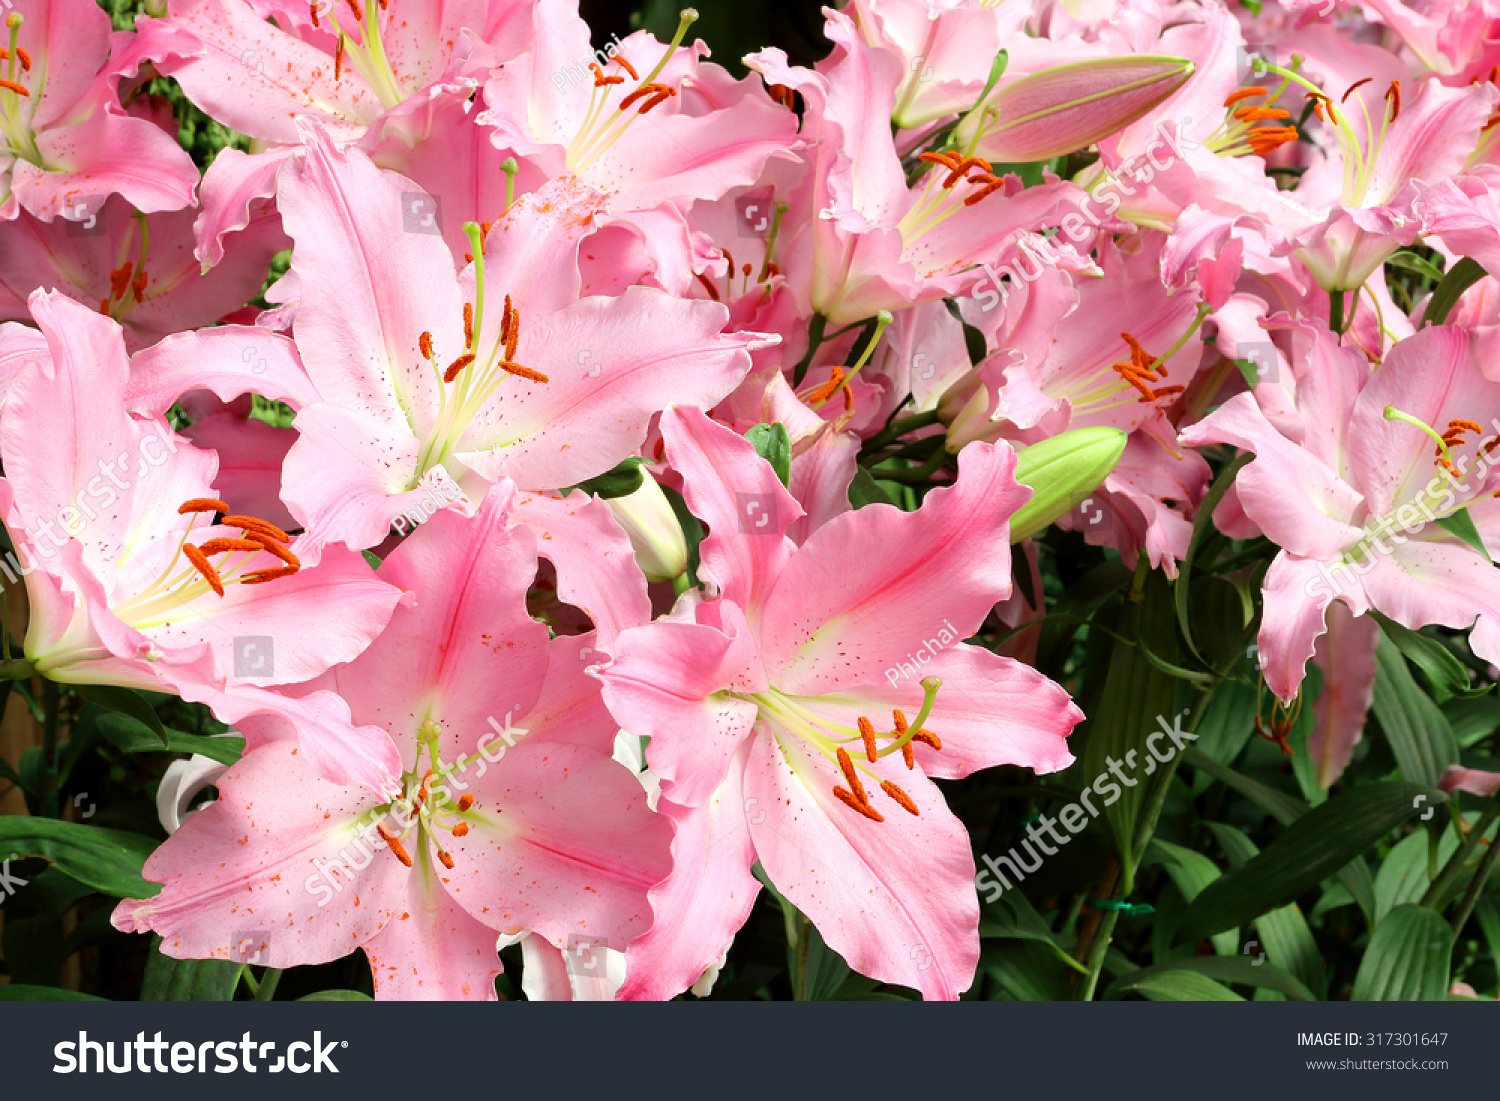 pink lily flower garden #317301647